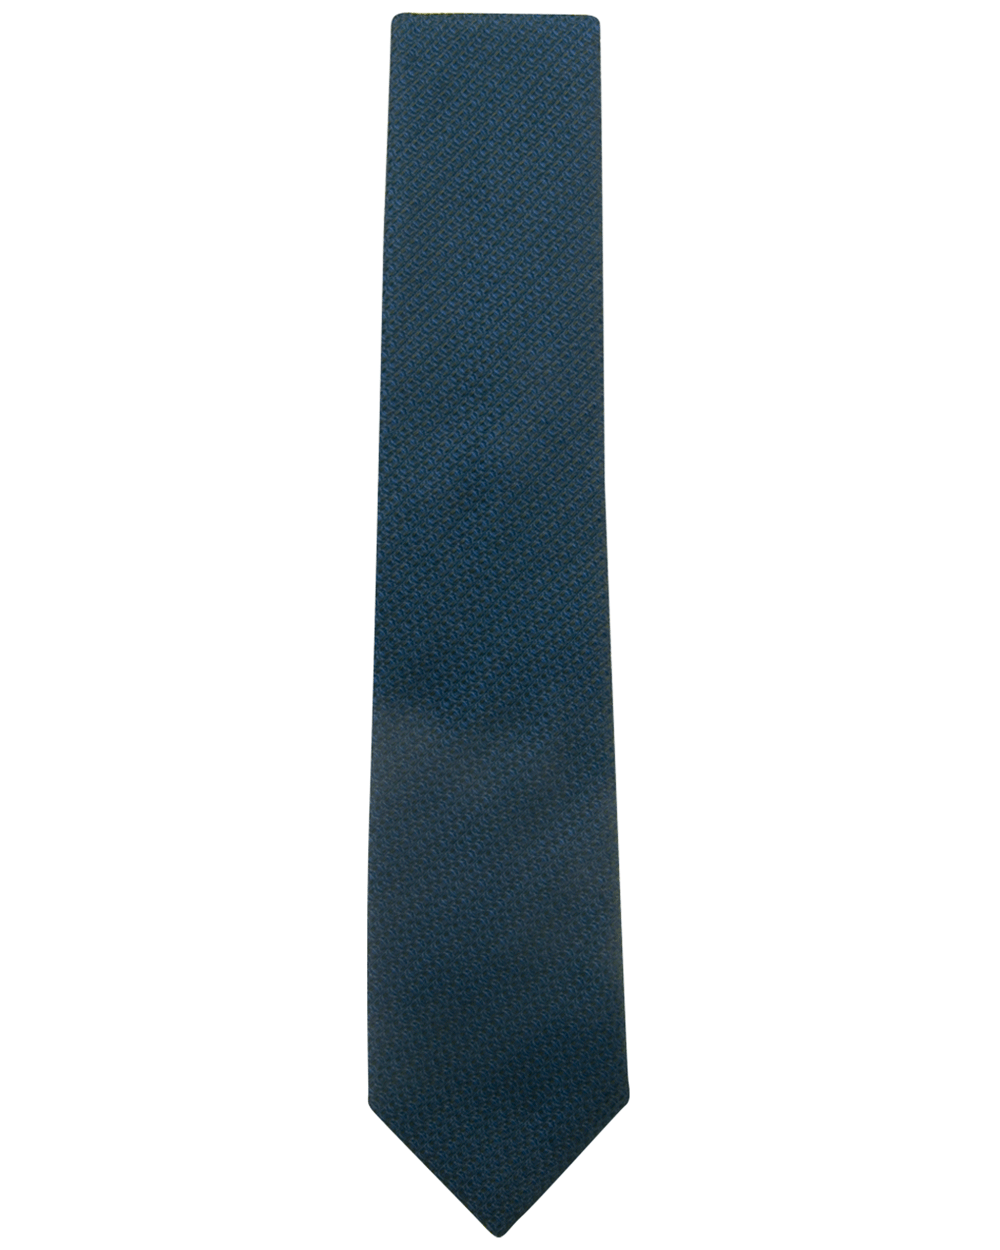 Royal Jacquard Tie